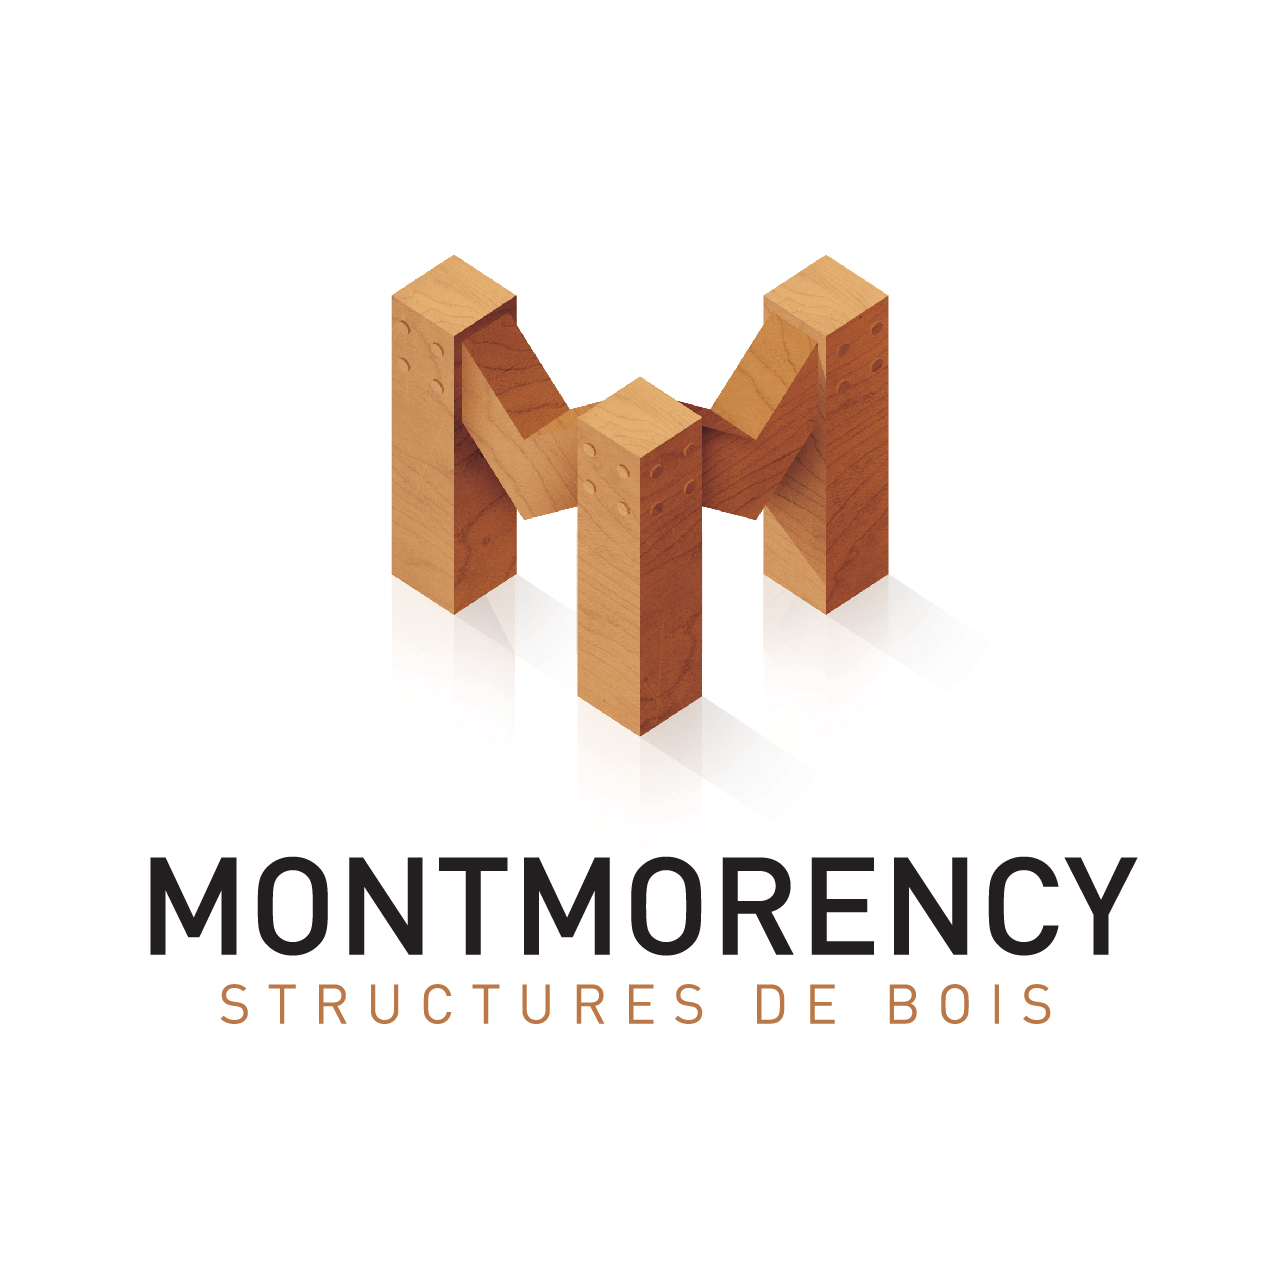 LOGO Montmorency Structure de bois